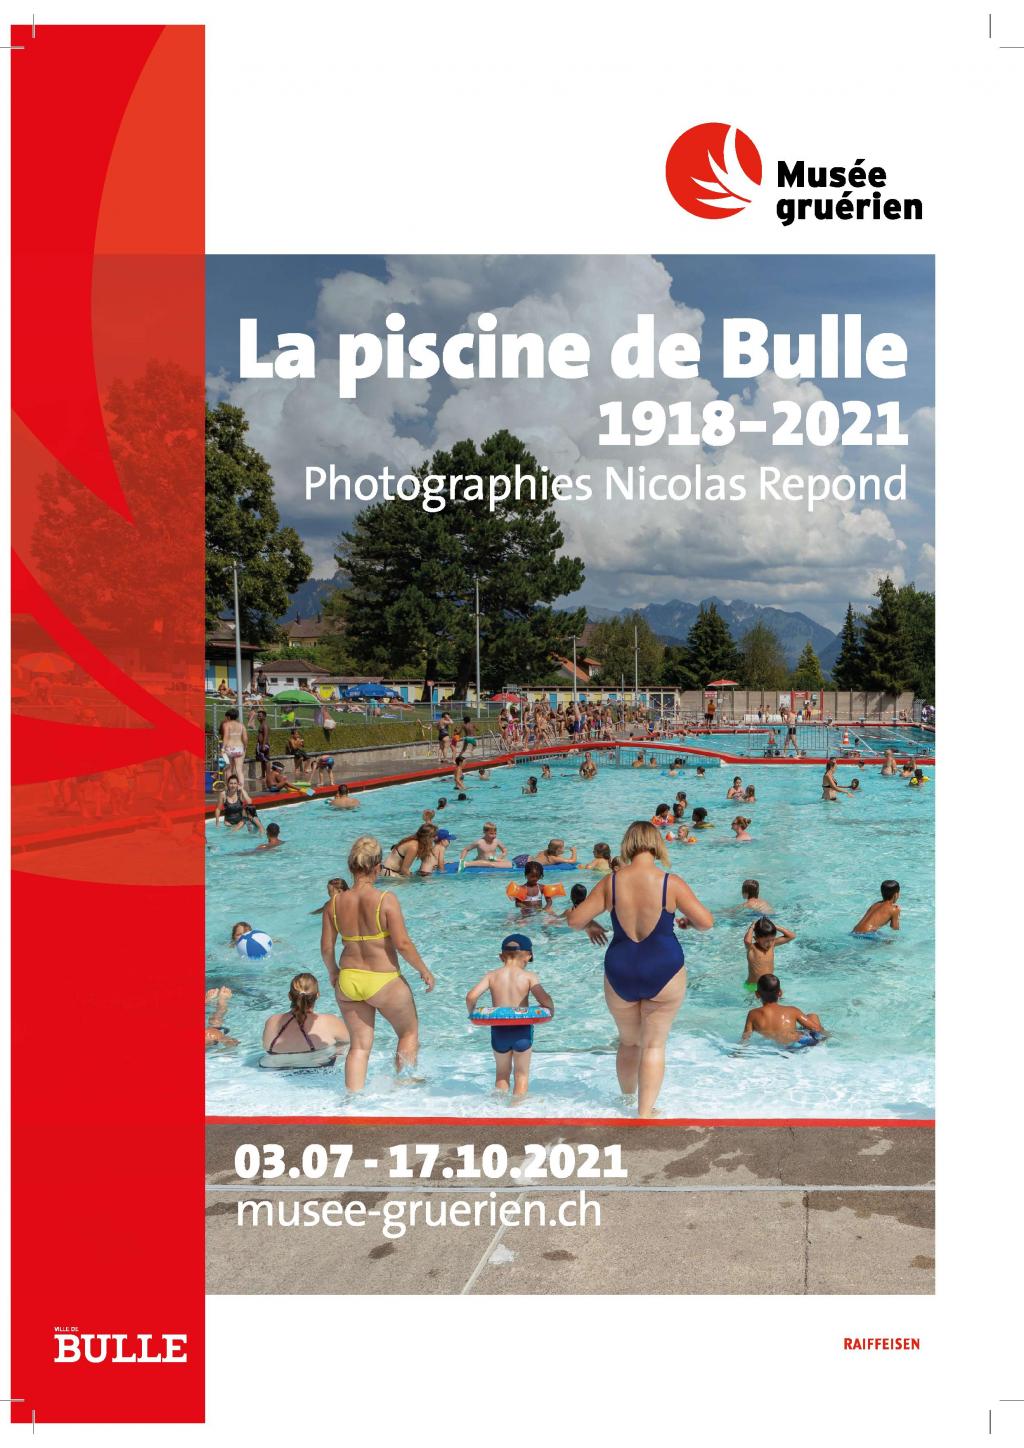 La piscine de Bulle - 1918-2021, photographies de Nicolas Repond